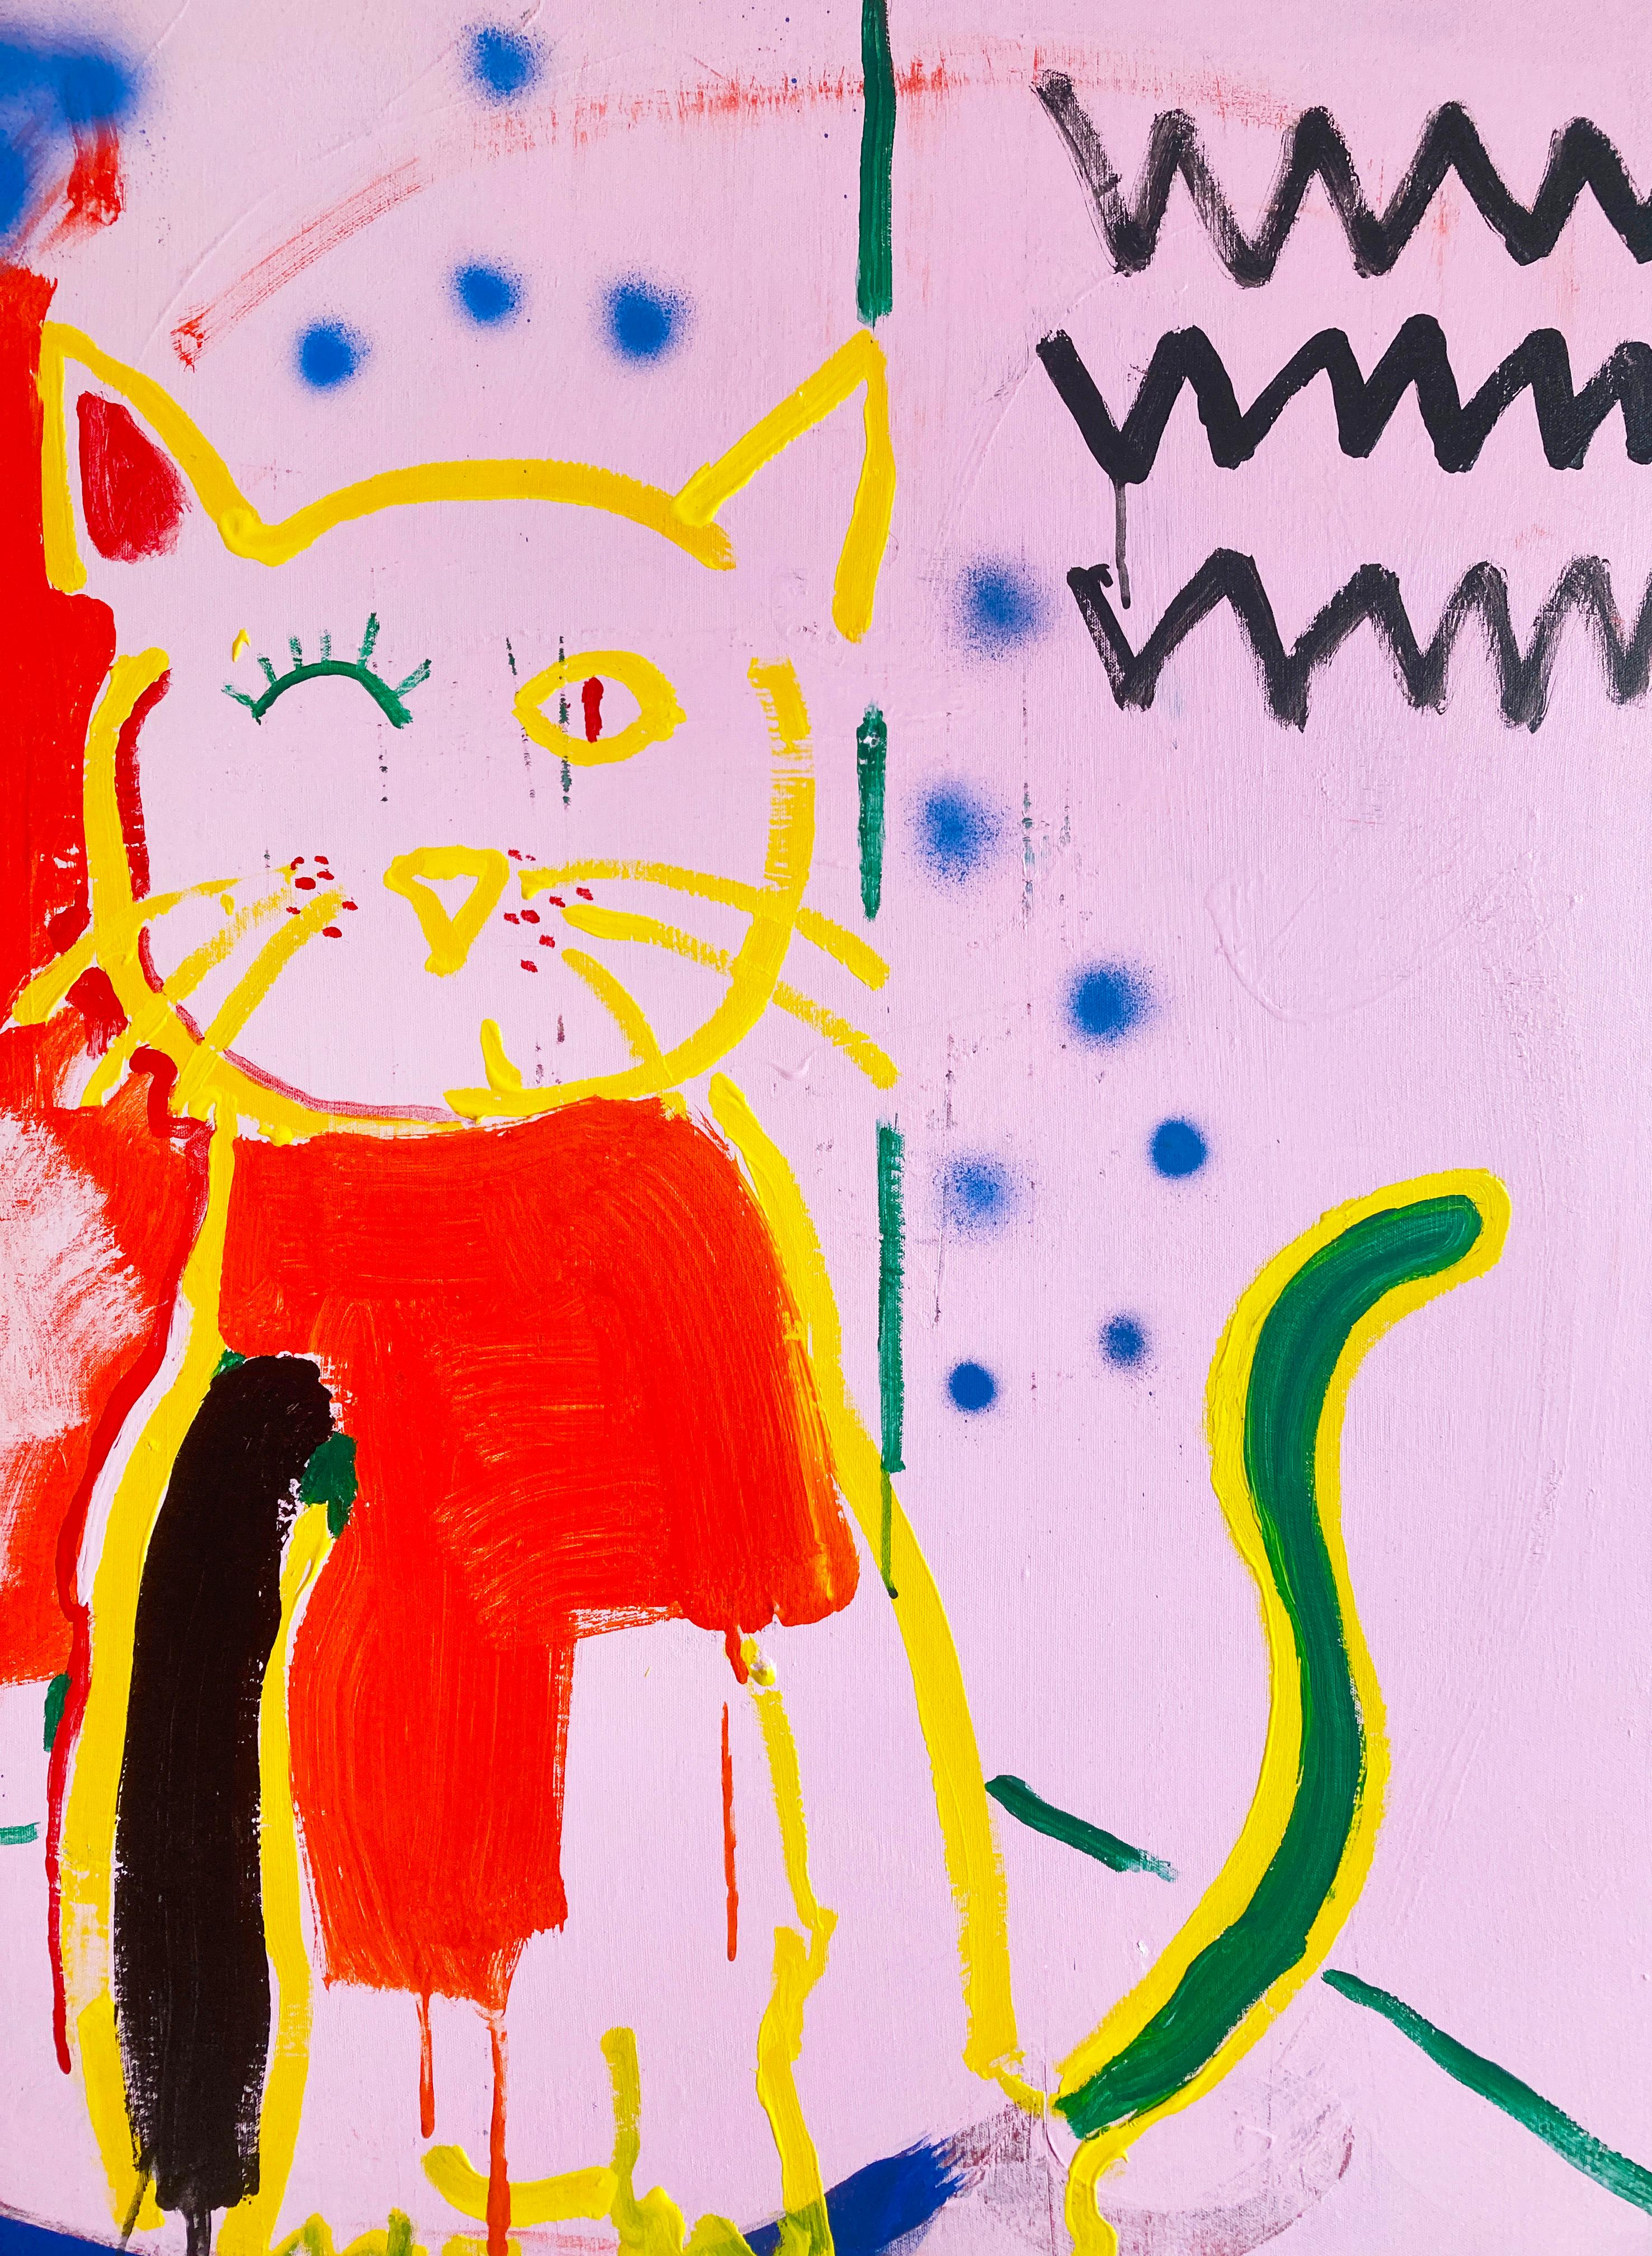 Winking Cat ist ein experimentelles Werk, das verschiedene Medien, abstrakte Formen, Andeutungen von Mustern und Gesten kombiniert.  Dieses Gemälde, ein Original des Künstlers, ist ein einzigartiges Projekt für Higgins und verleiht einem Raum ein